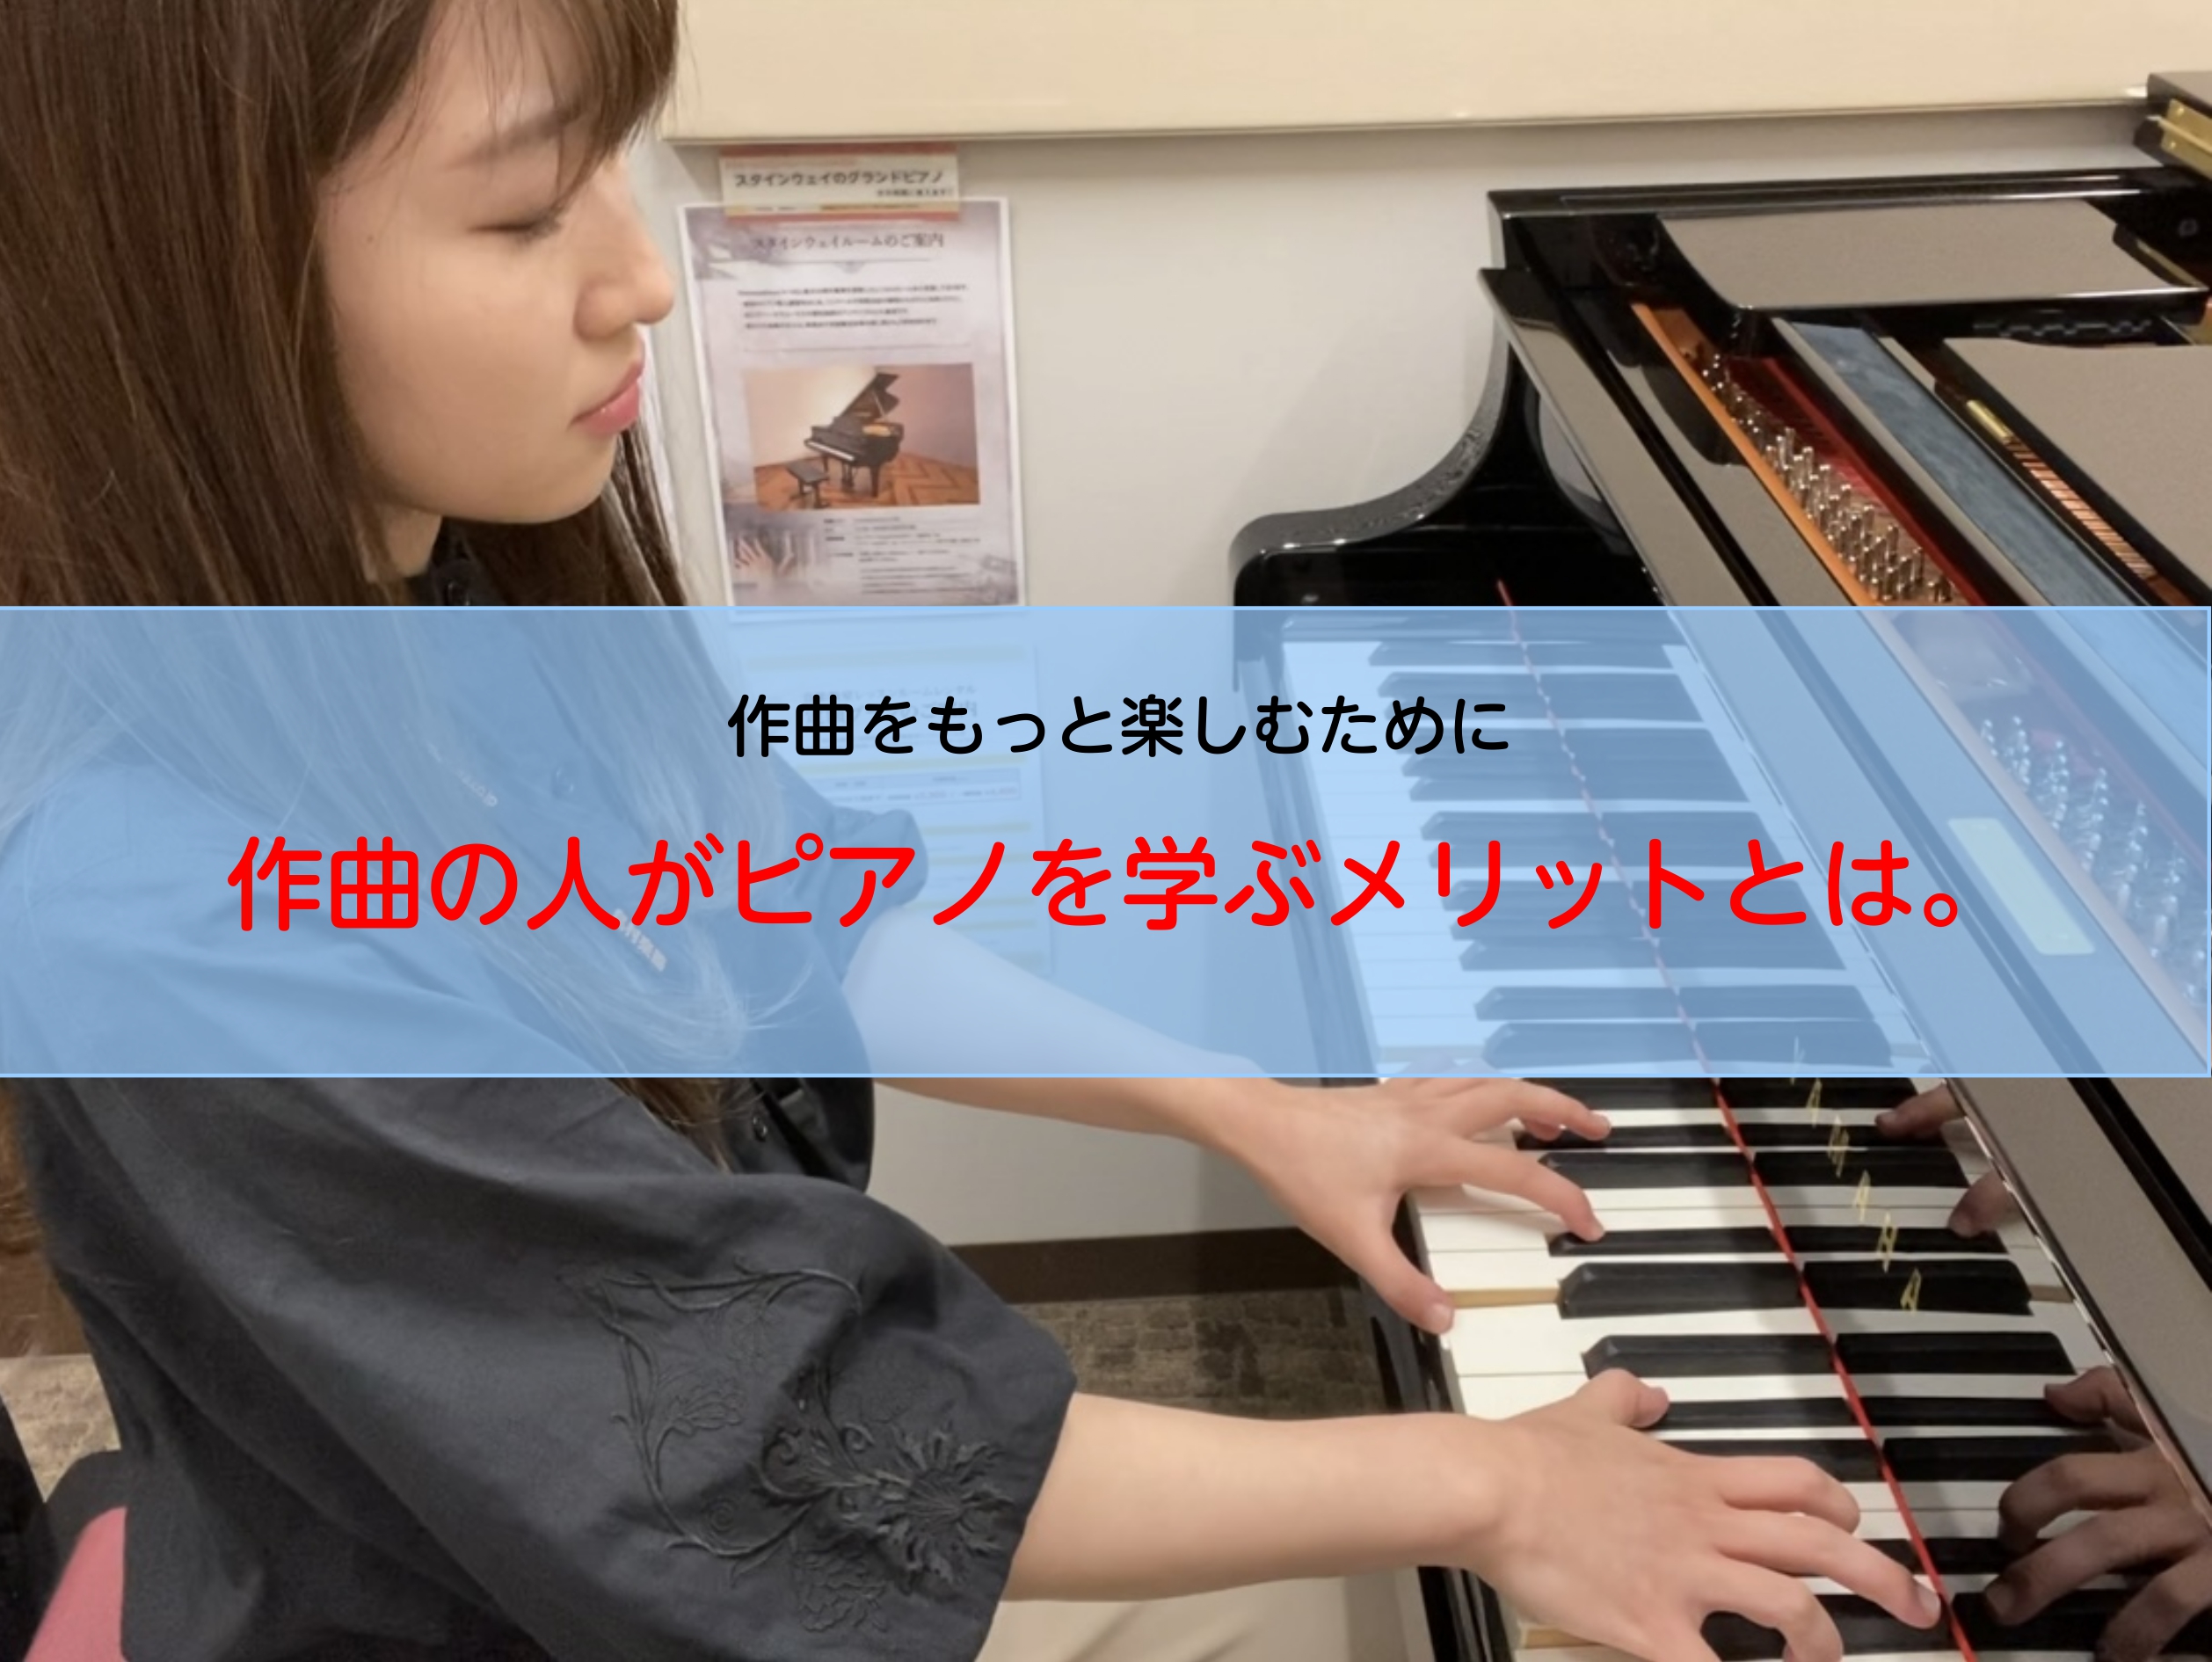 こんにちは。ピアノインストラクターの安藤です。実は、ピアノを学ぶ、練習することで作曲に使えることはたくさんあります！〇作曲した曲がどうしても似たような曲になってしまう。〇どこか単調で物足りない。〇曲やメロディーのアイディアが浮かばない。こういったお悩みをお持ちのかたは必見です！以下、ピアノを学ぶメリ […]